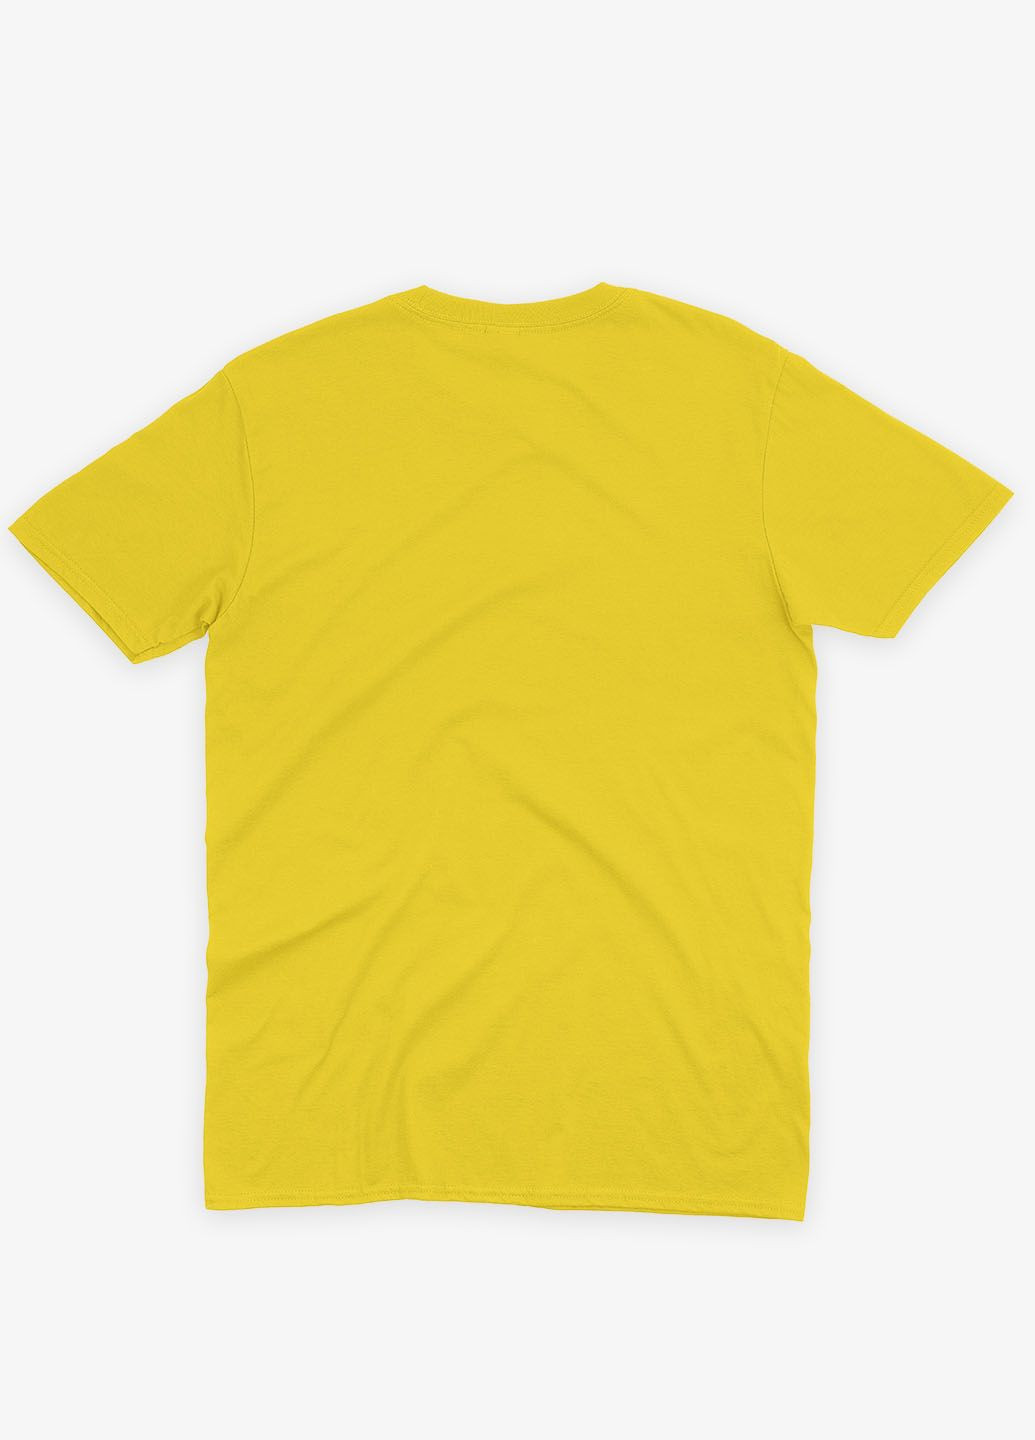 Желтая демисезонная футболка для девочки с патриотическим принтом карта украины (ts001-1-sun-005-1-009-g) Modno